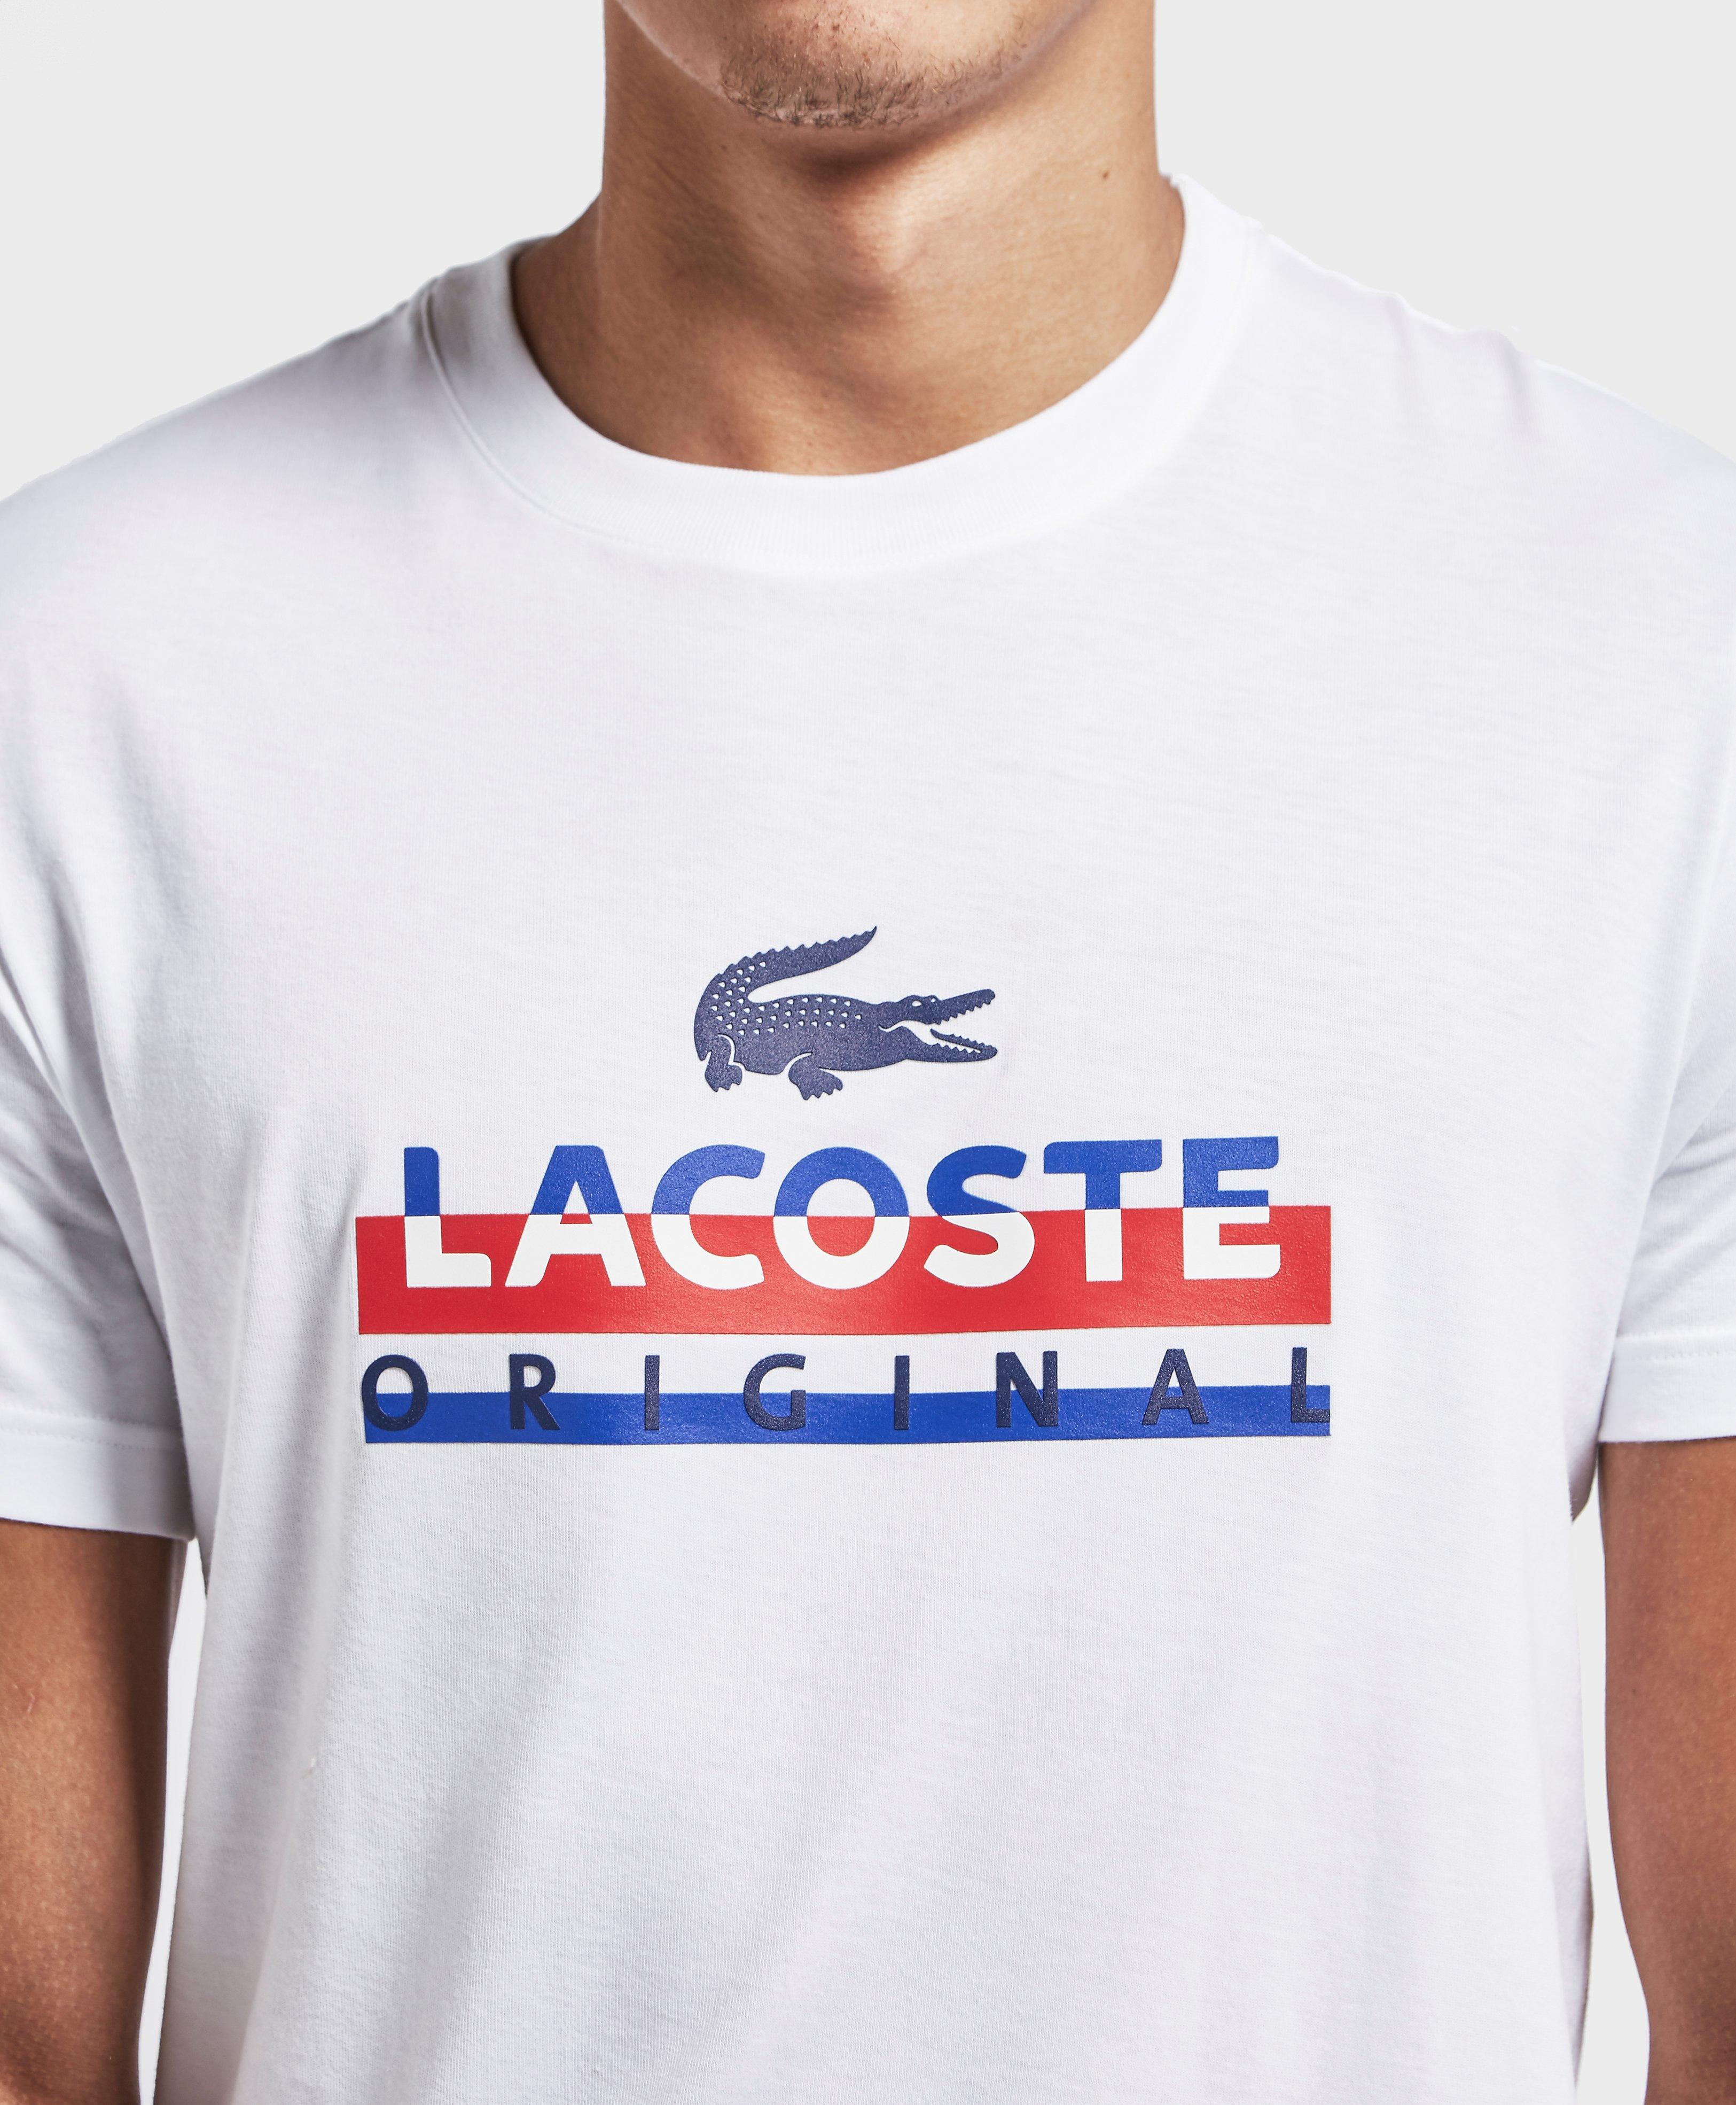 Lacoste Cotton Original Croc Short Sleeve T-shirt White for Men - Lyst